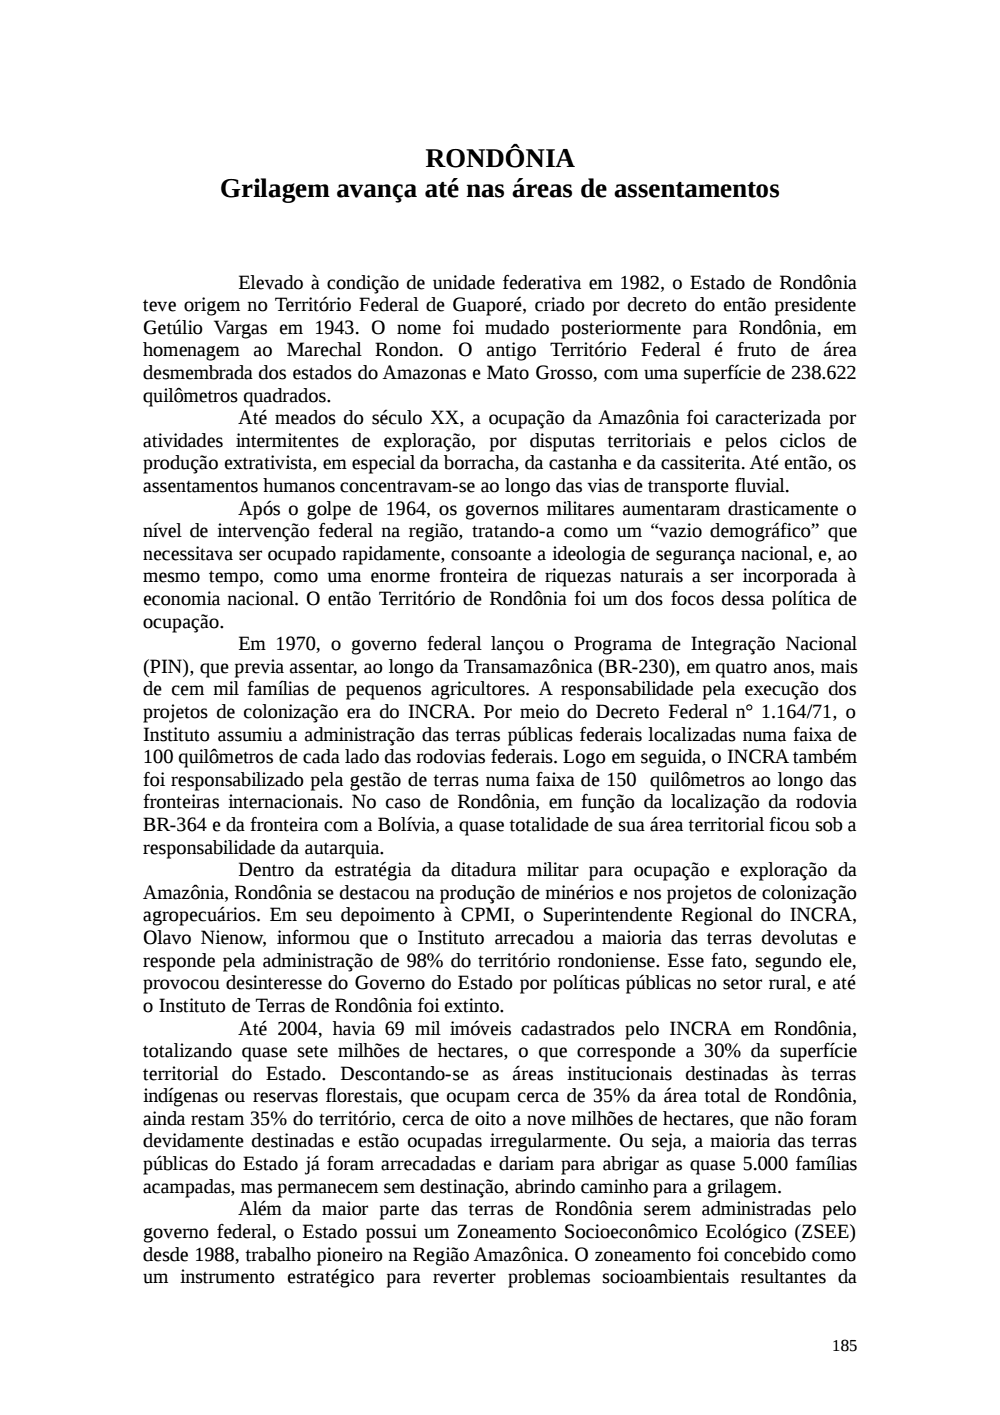 Page 185 from Relatório final da comissão